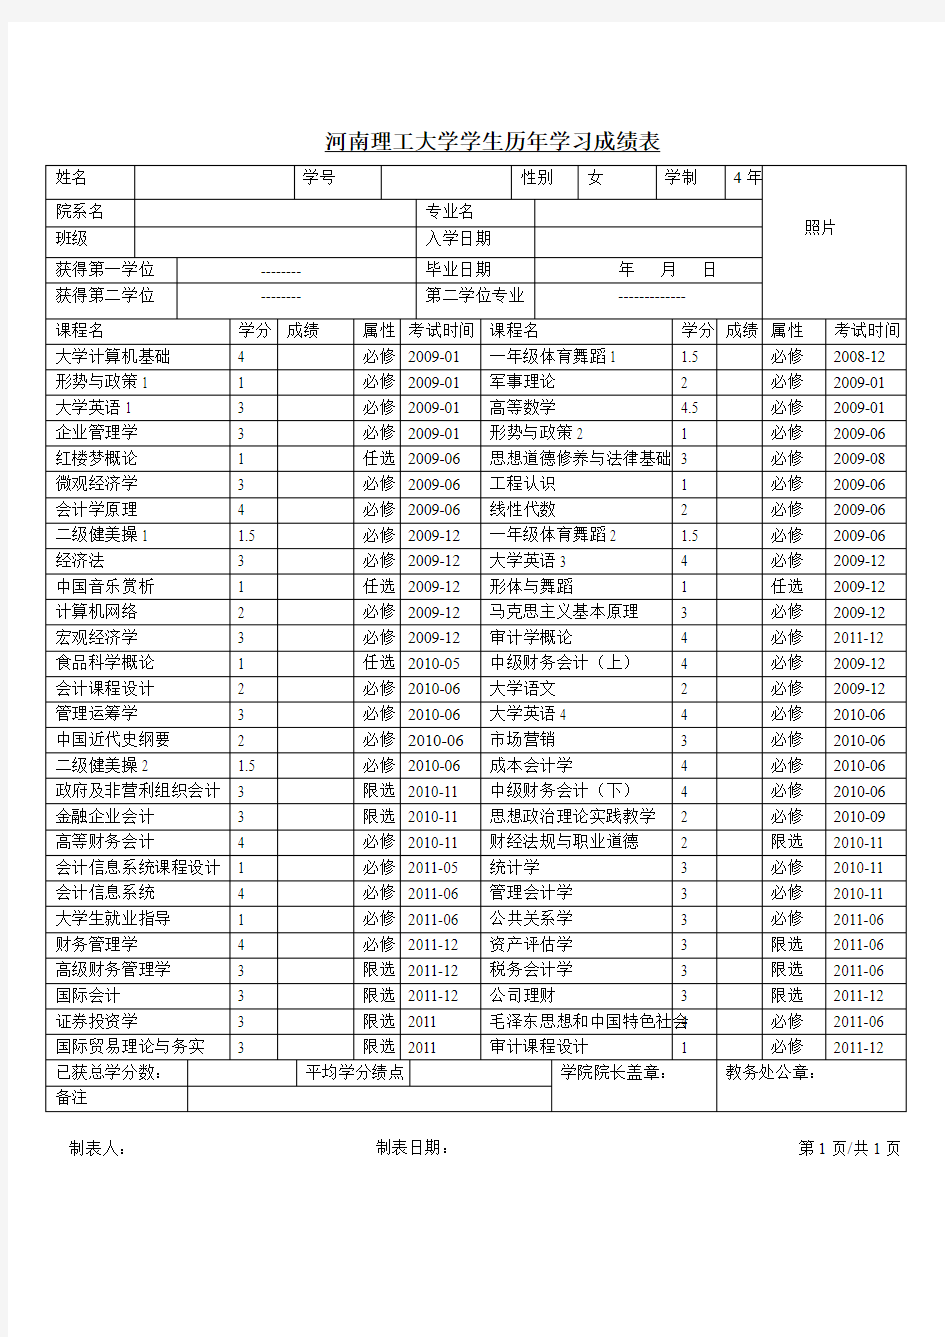 河南理工大学学生历年学习成绩表